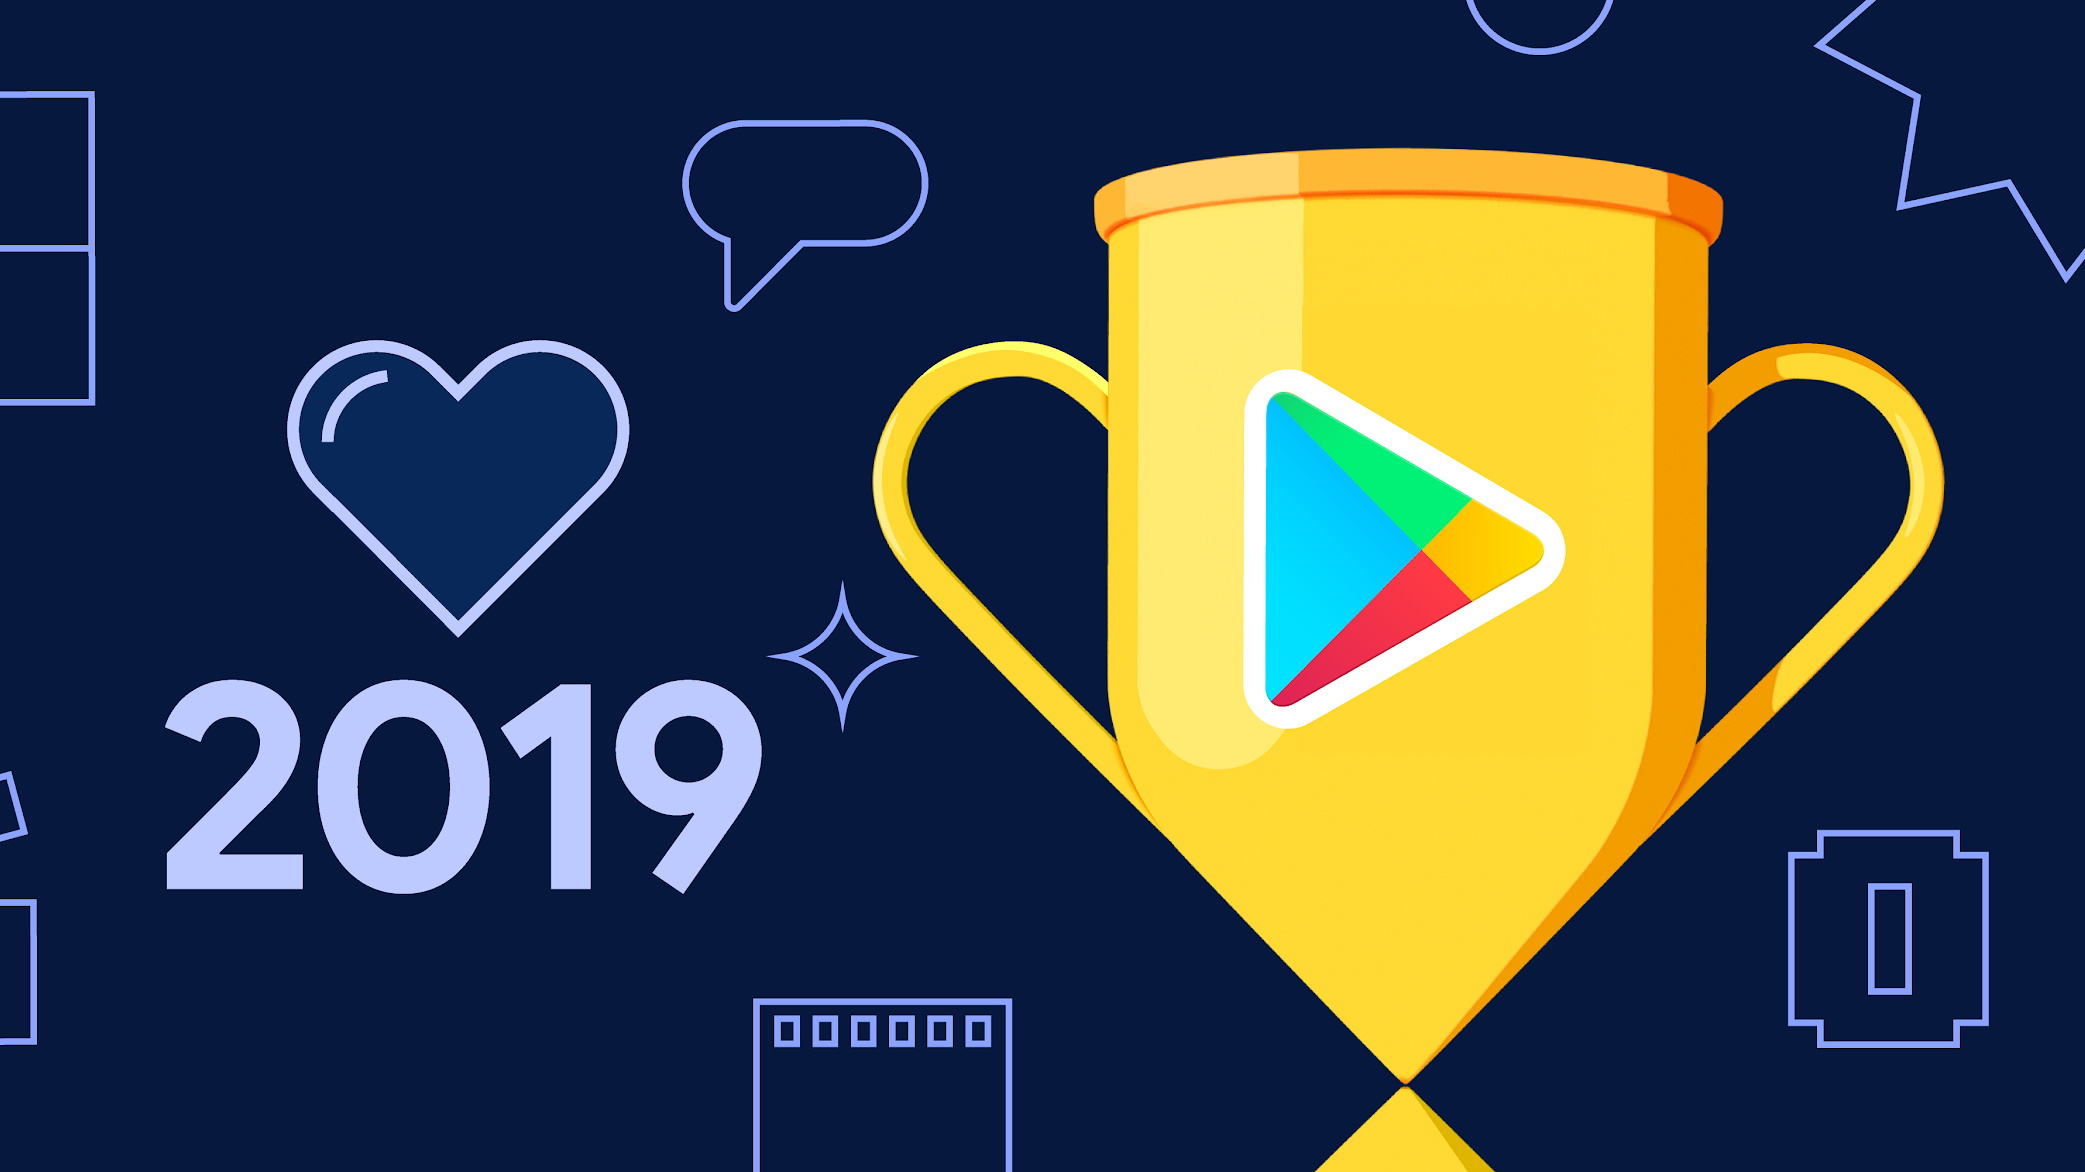 Confira a lista dos melhores apps e jogos da PlayStore no Brasil em 2019